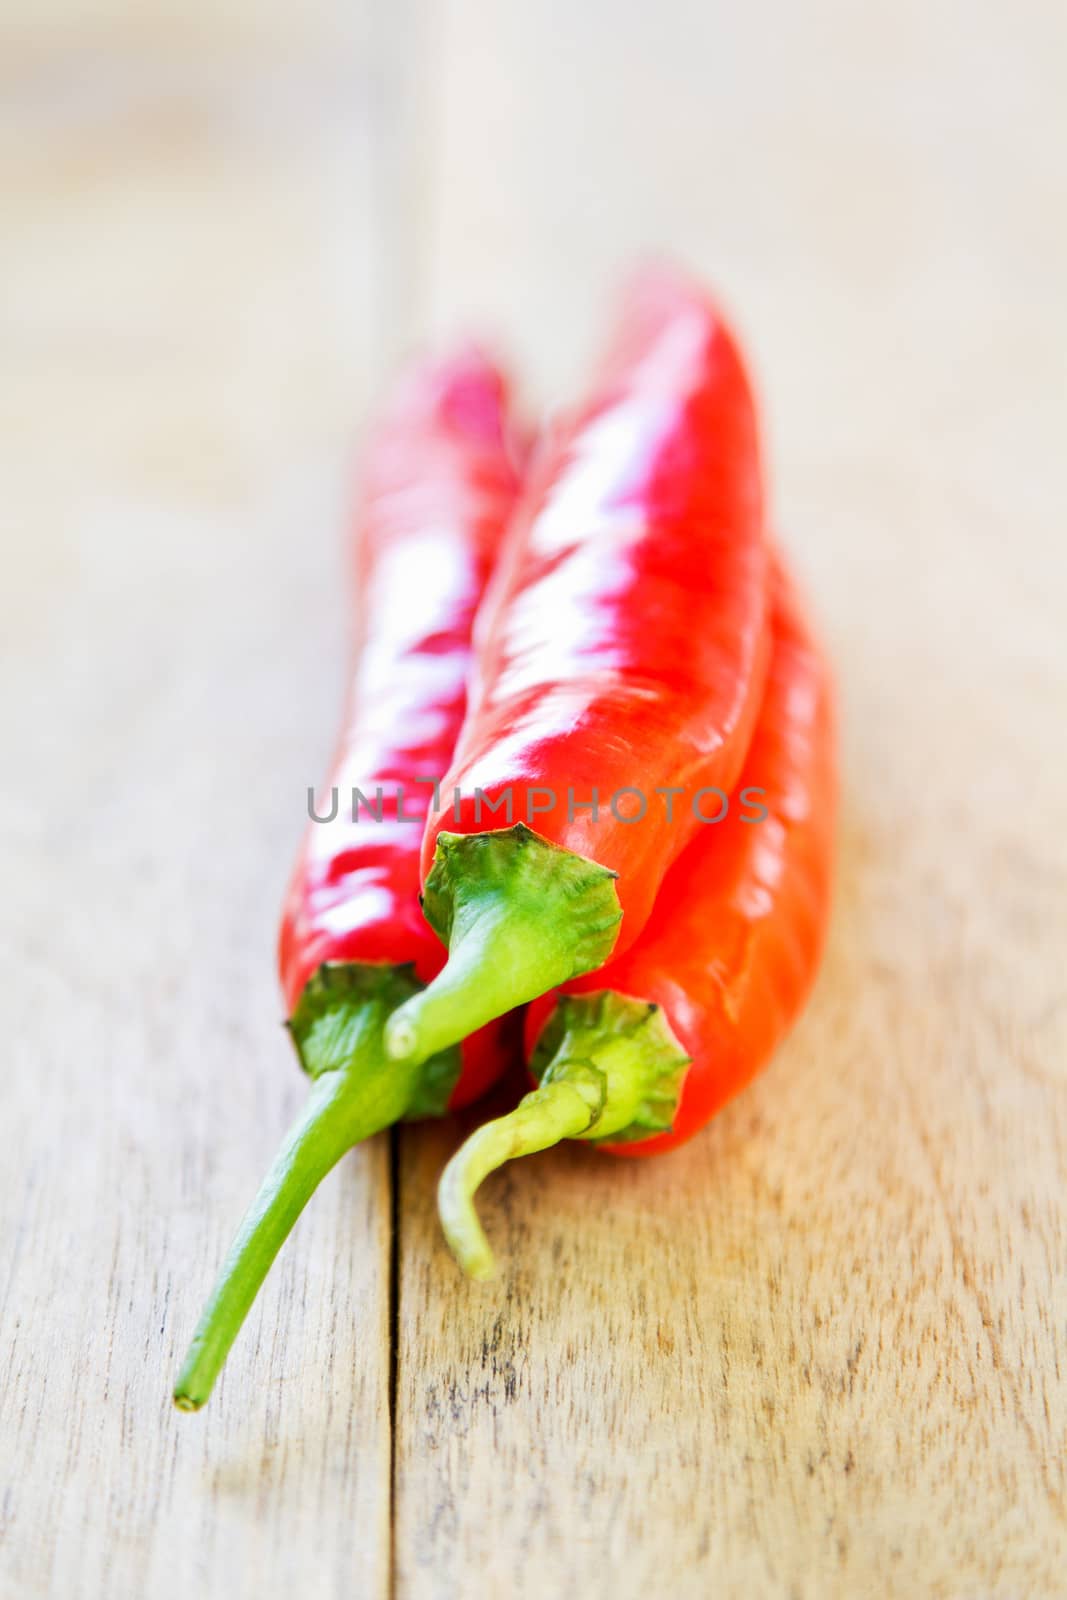 Thai red Chili